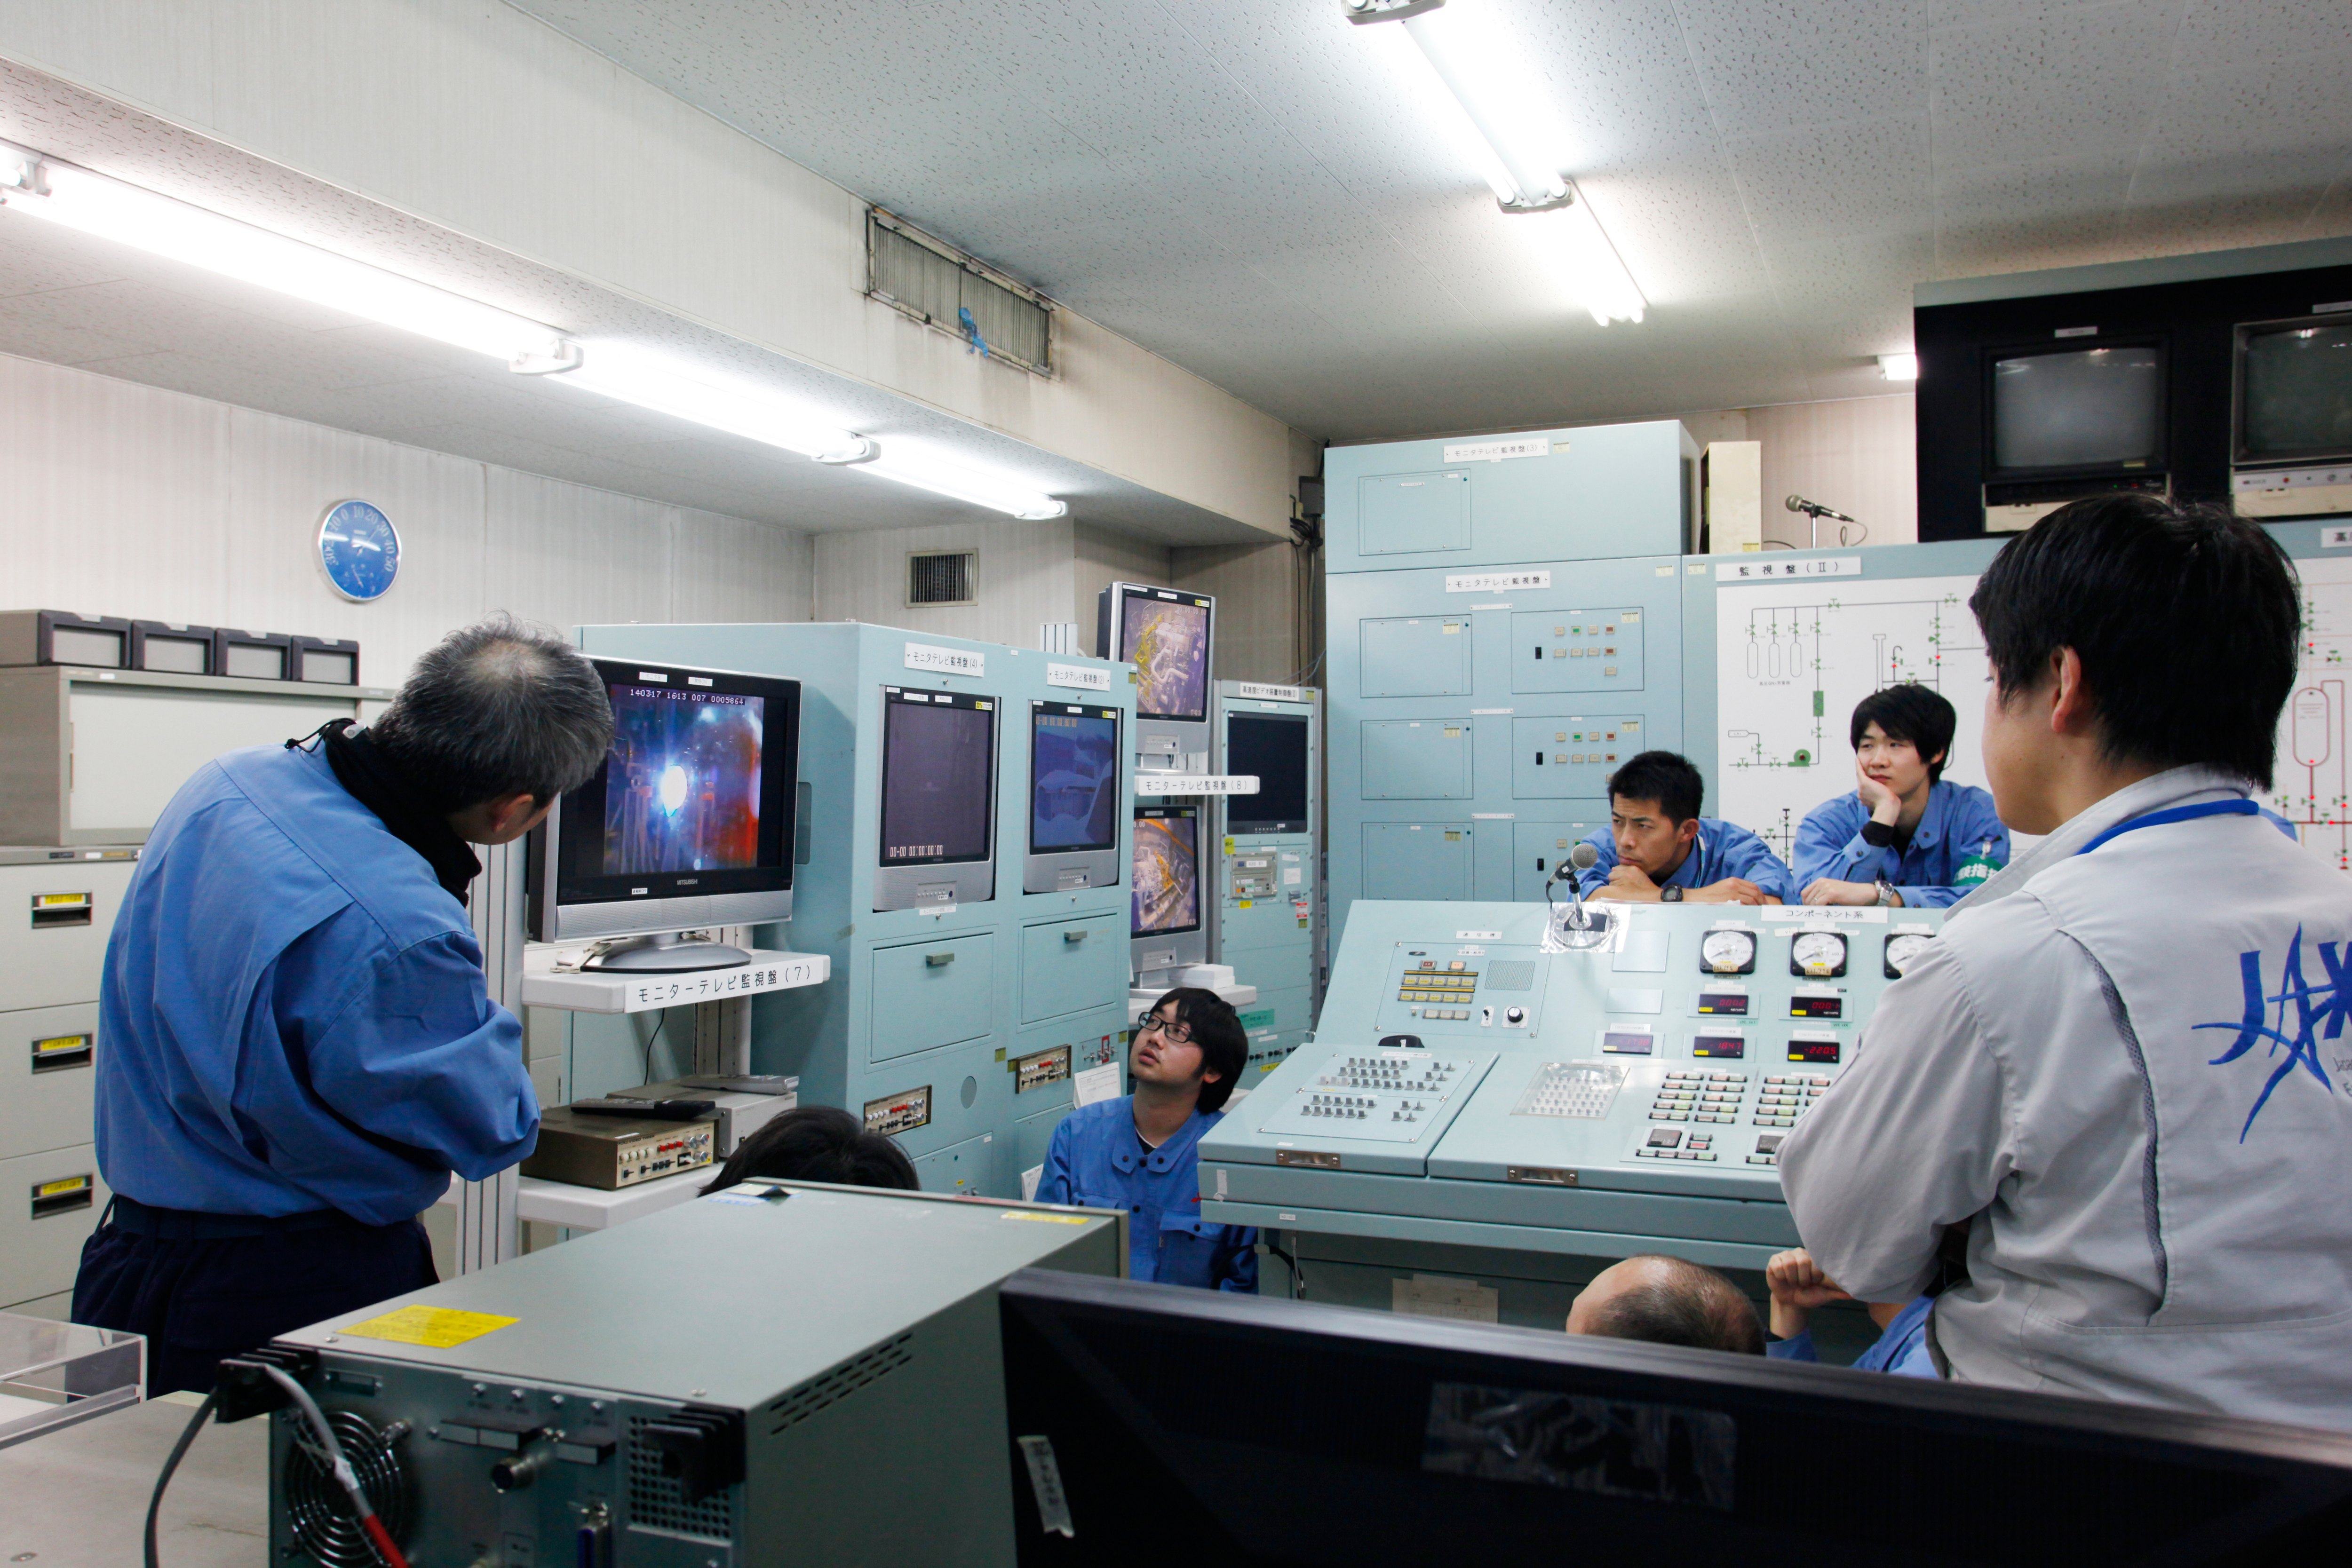 2014/3/17に三菱重工業秋田県田代試験場において実施されたLE-9原型エンジン燃焼器単体短秒時燃焼試験時の制御室内の様子。🄫JAXA